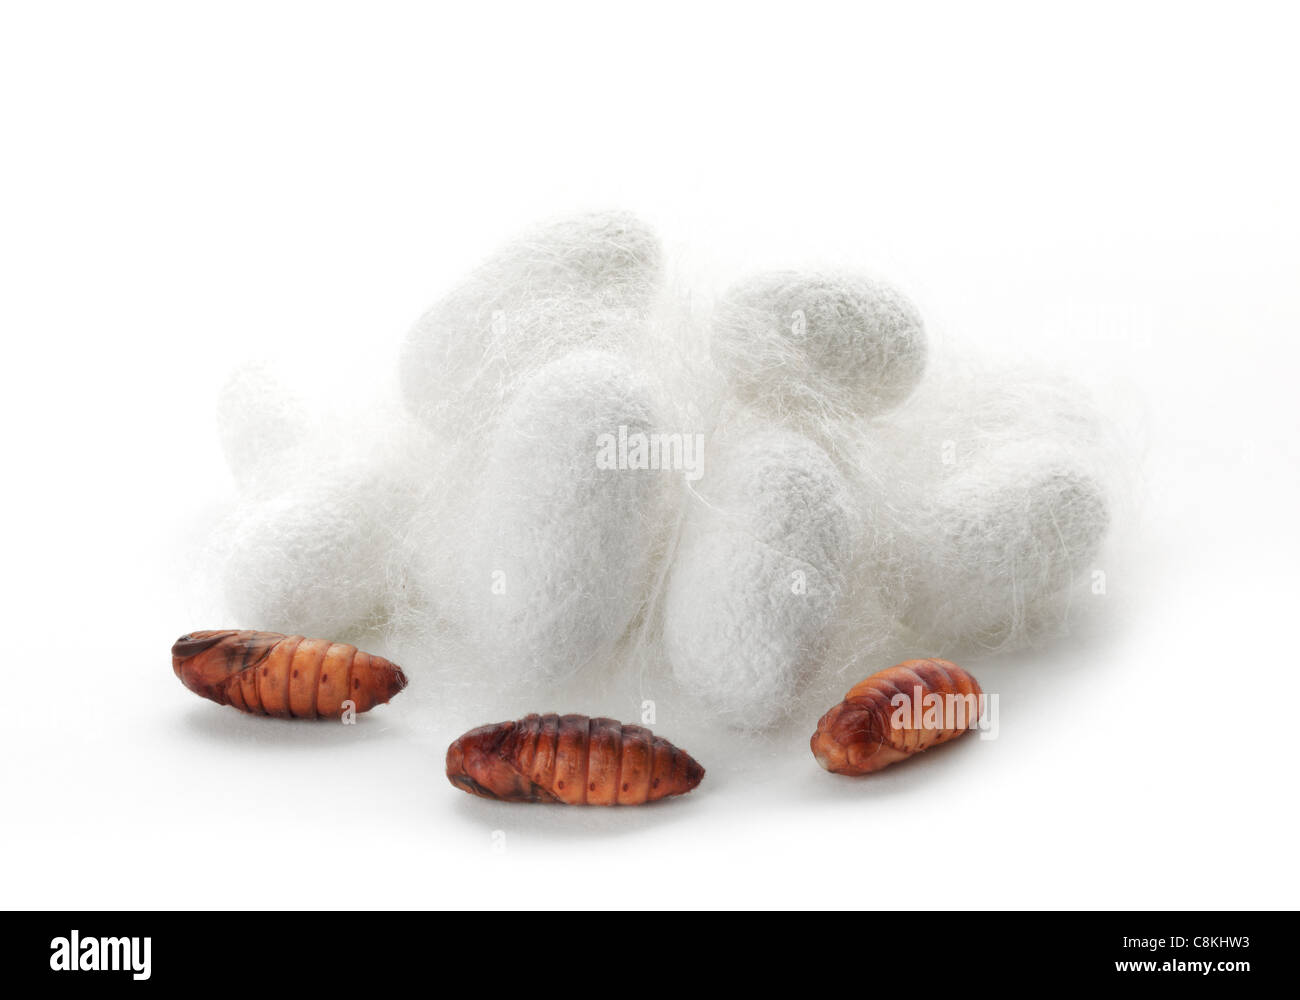 Silkworm chrysalis and cocoon Stock Photo